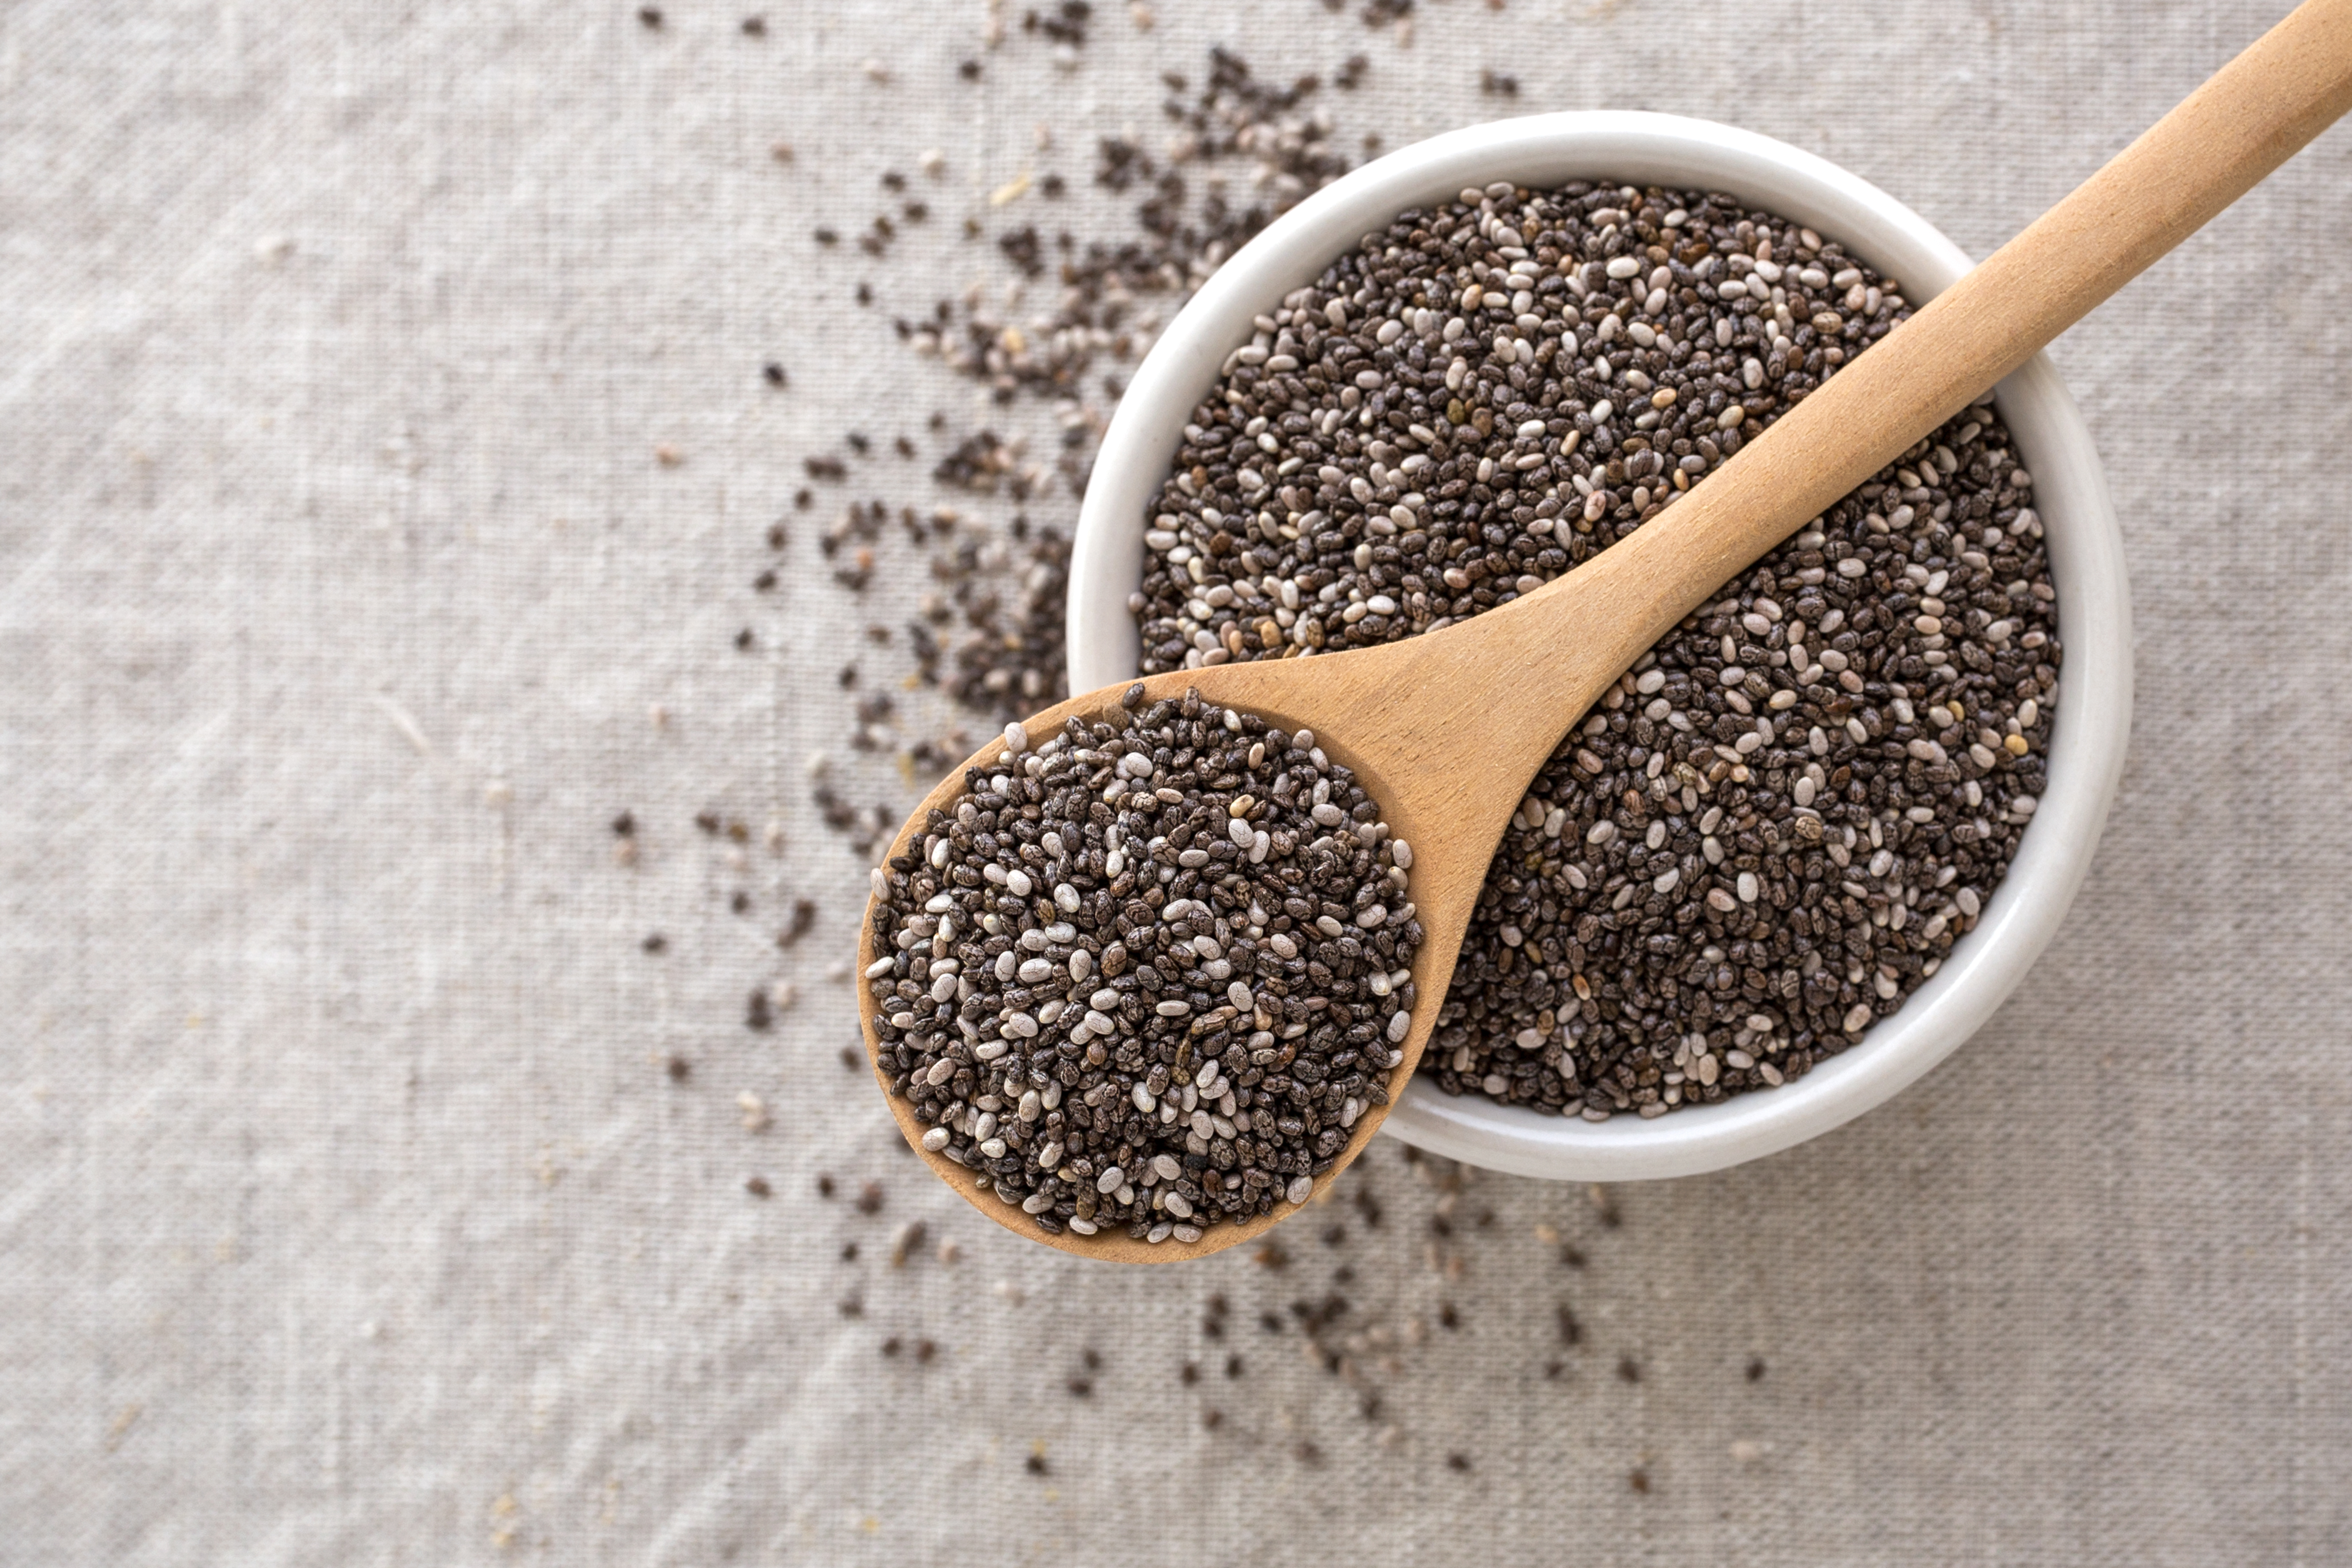 Las semillas de chía son una gran fuente de antioxidantes, por lo que ayudan a la pérdida de peso, a la salud digestiva y del corazón. (Foto Prensa Libre: Servicios/Shutterstock)